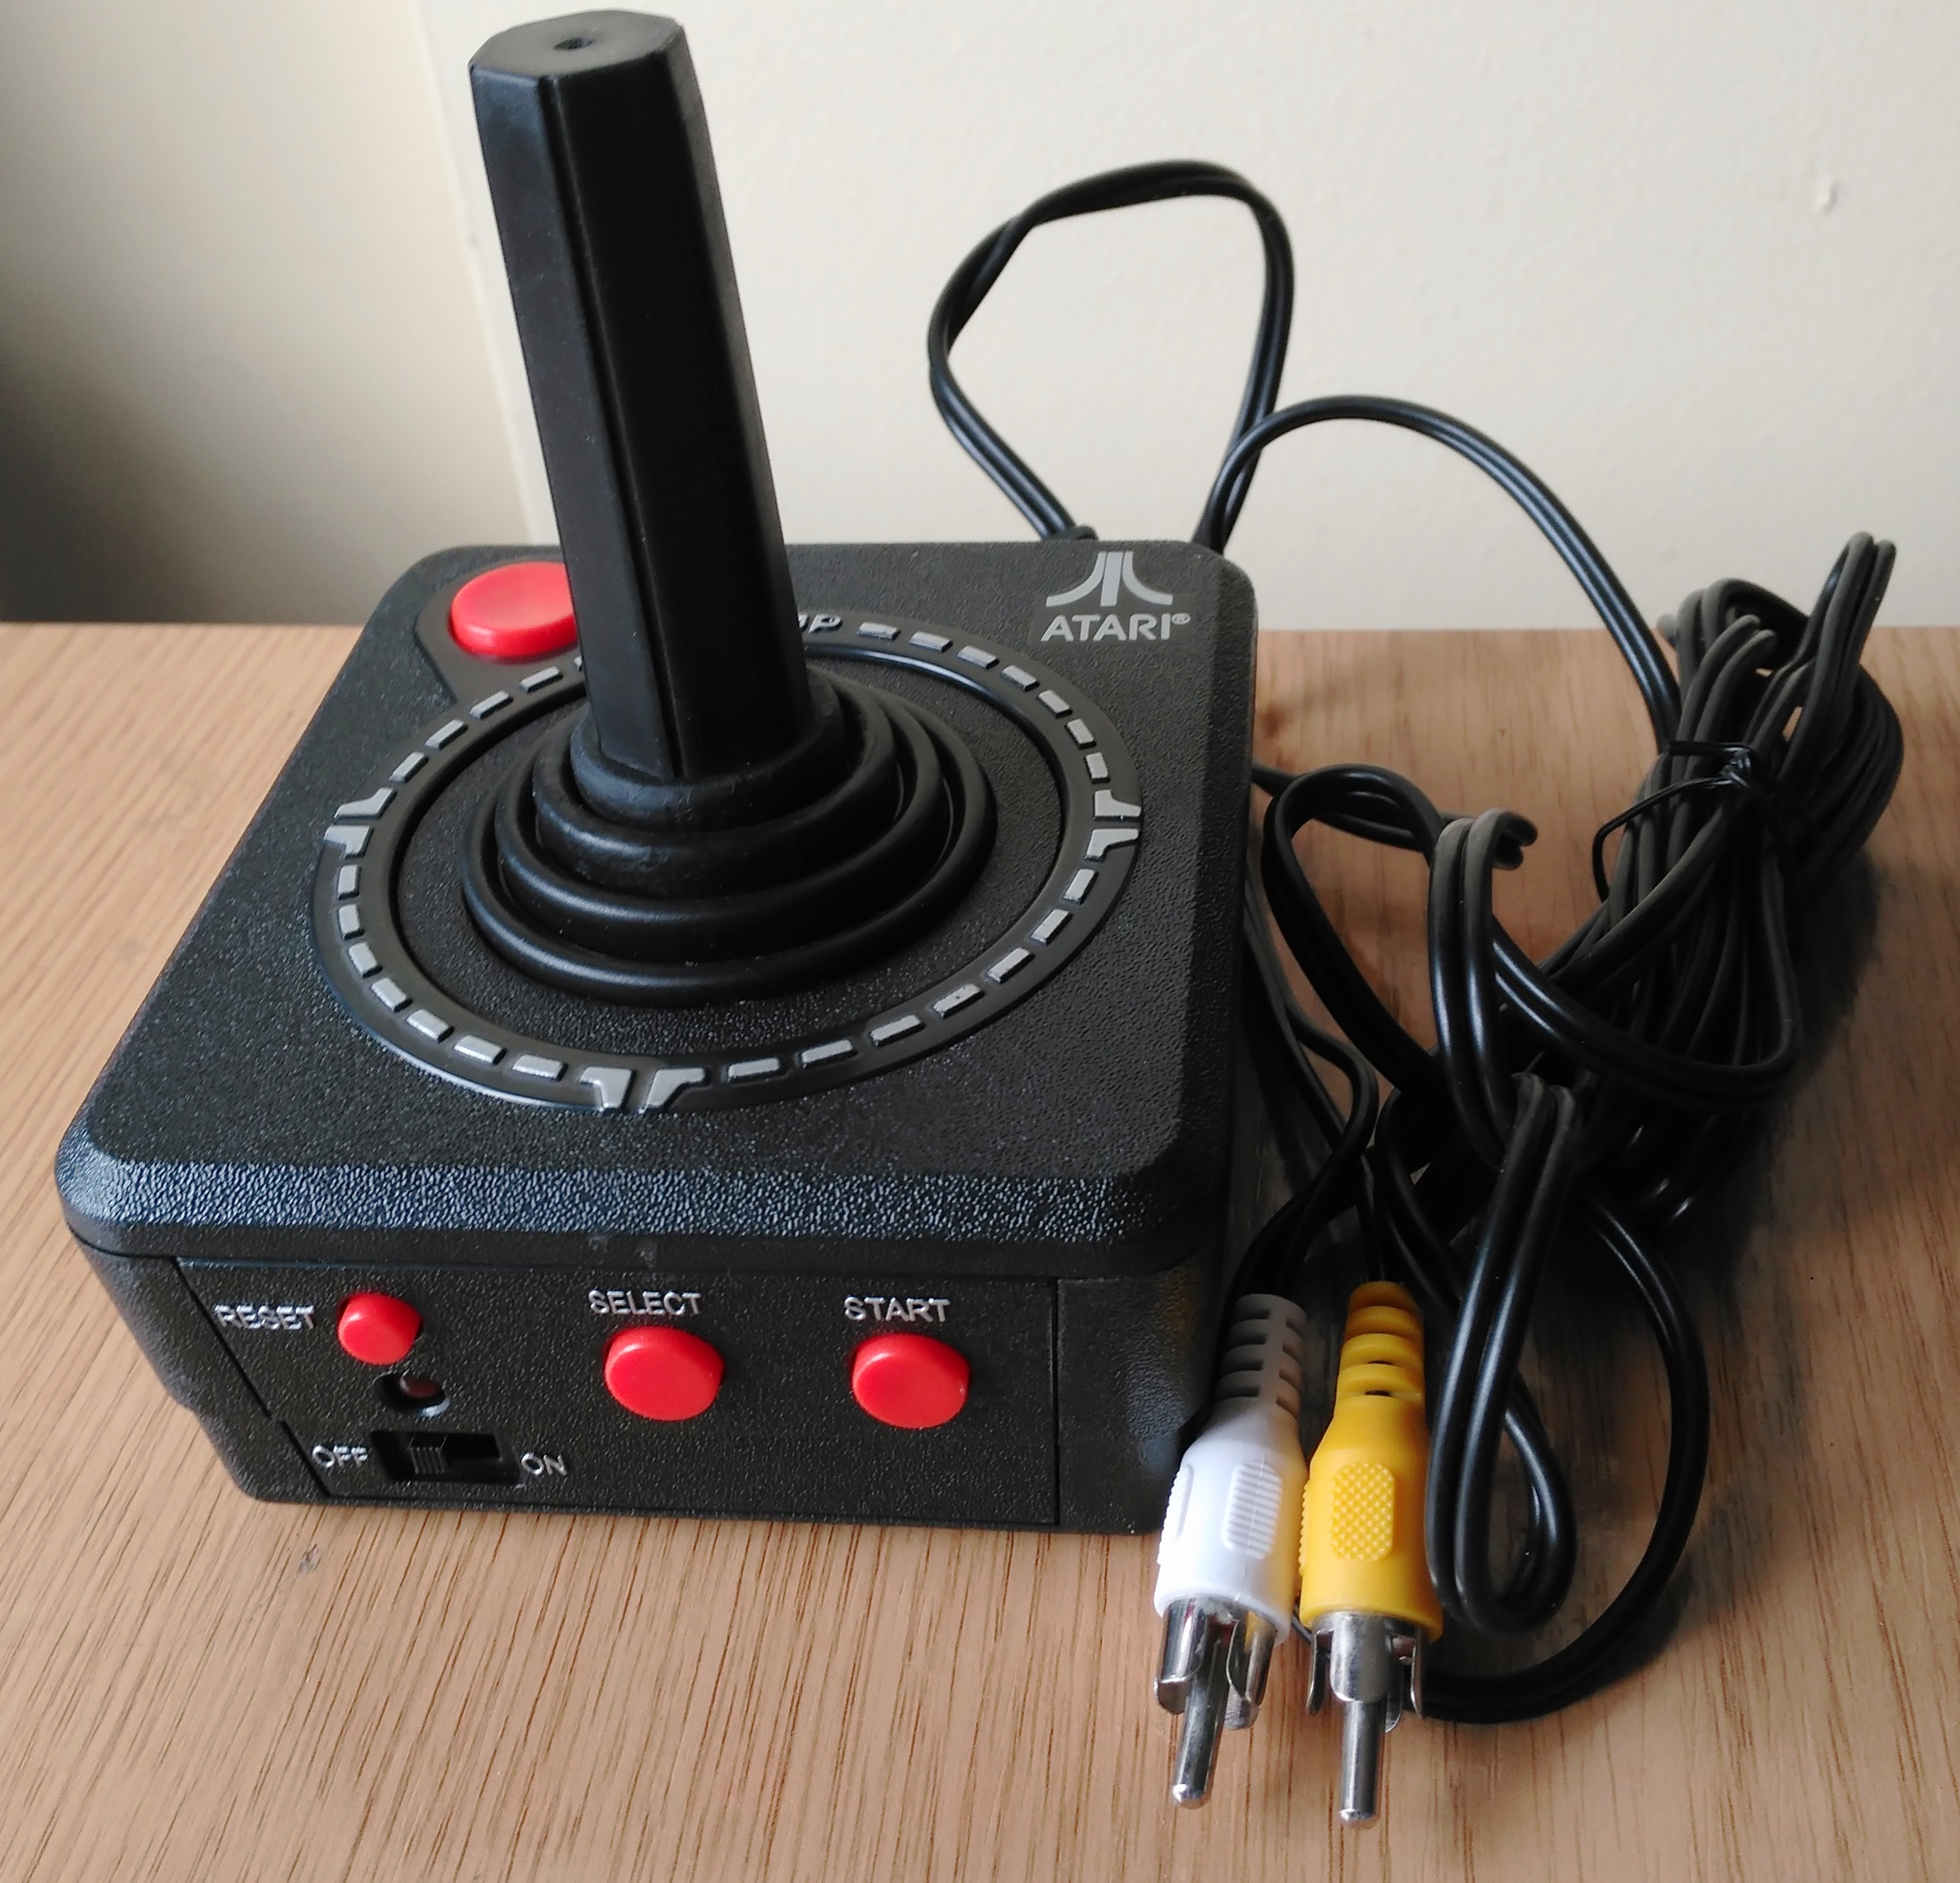 Atari 2600 - Wikipedia